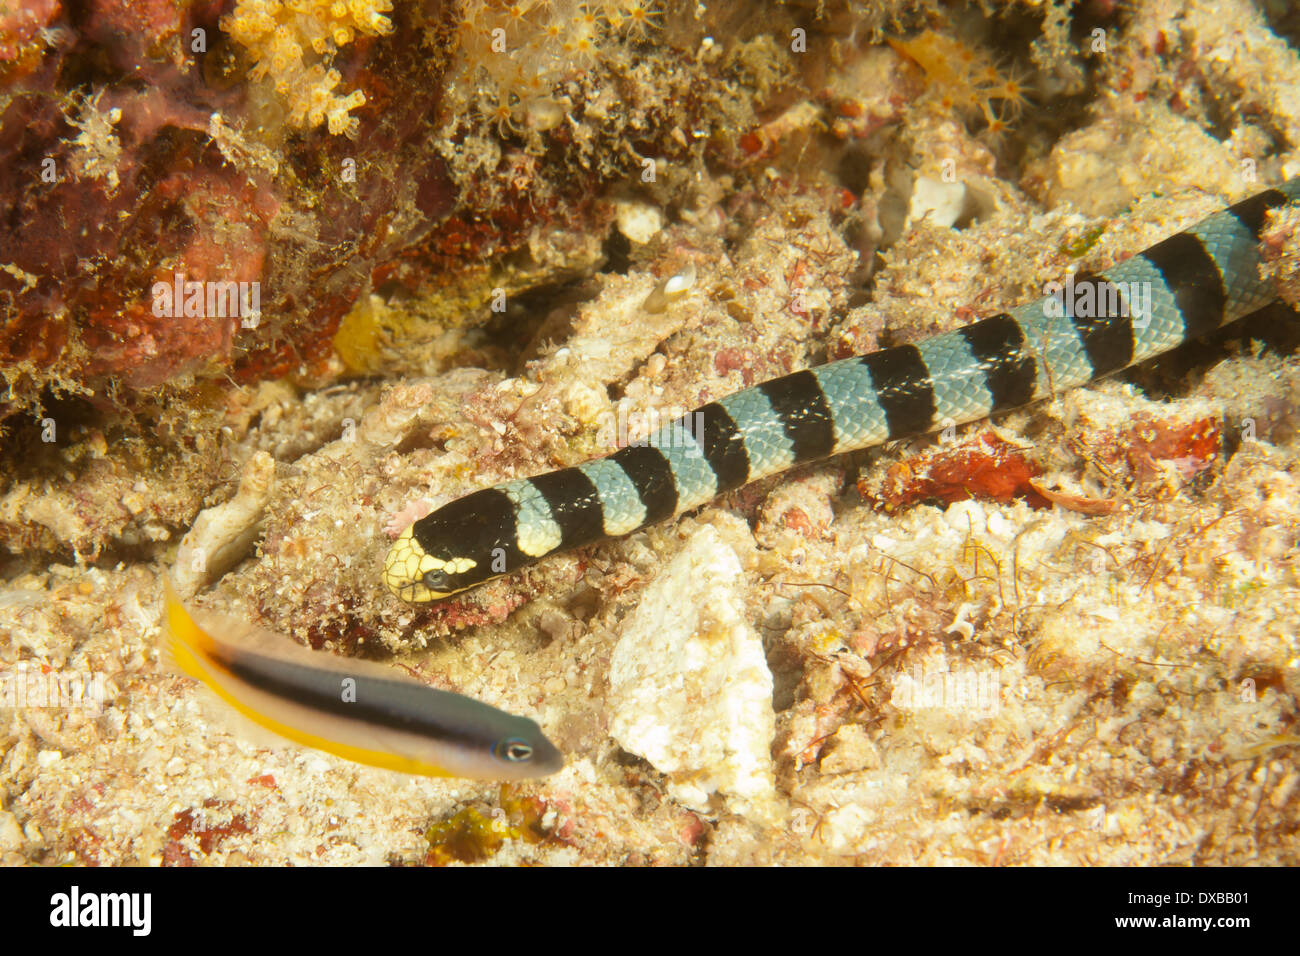 Sea snake, Citrus Ridge dive site, Tanjung Island, Raja Ampat, Indonesia Stock Photo